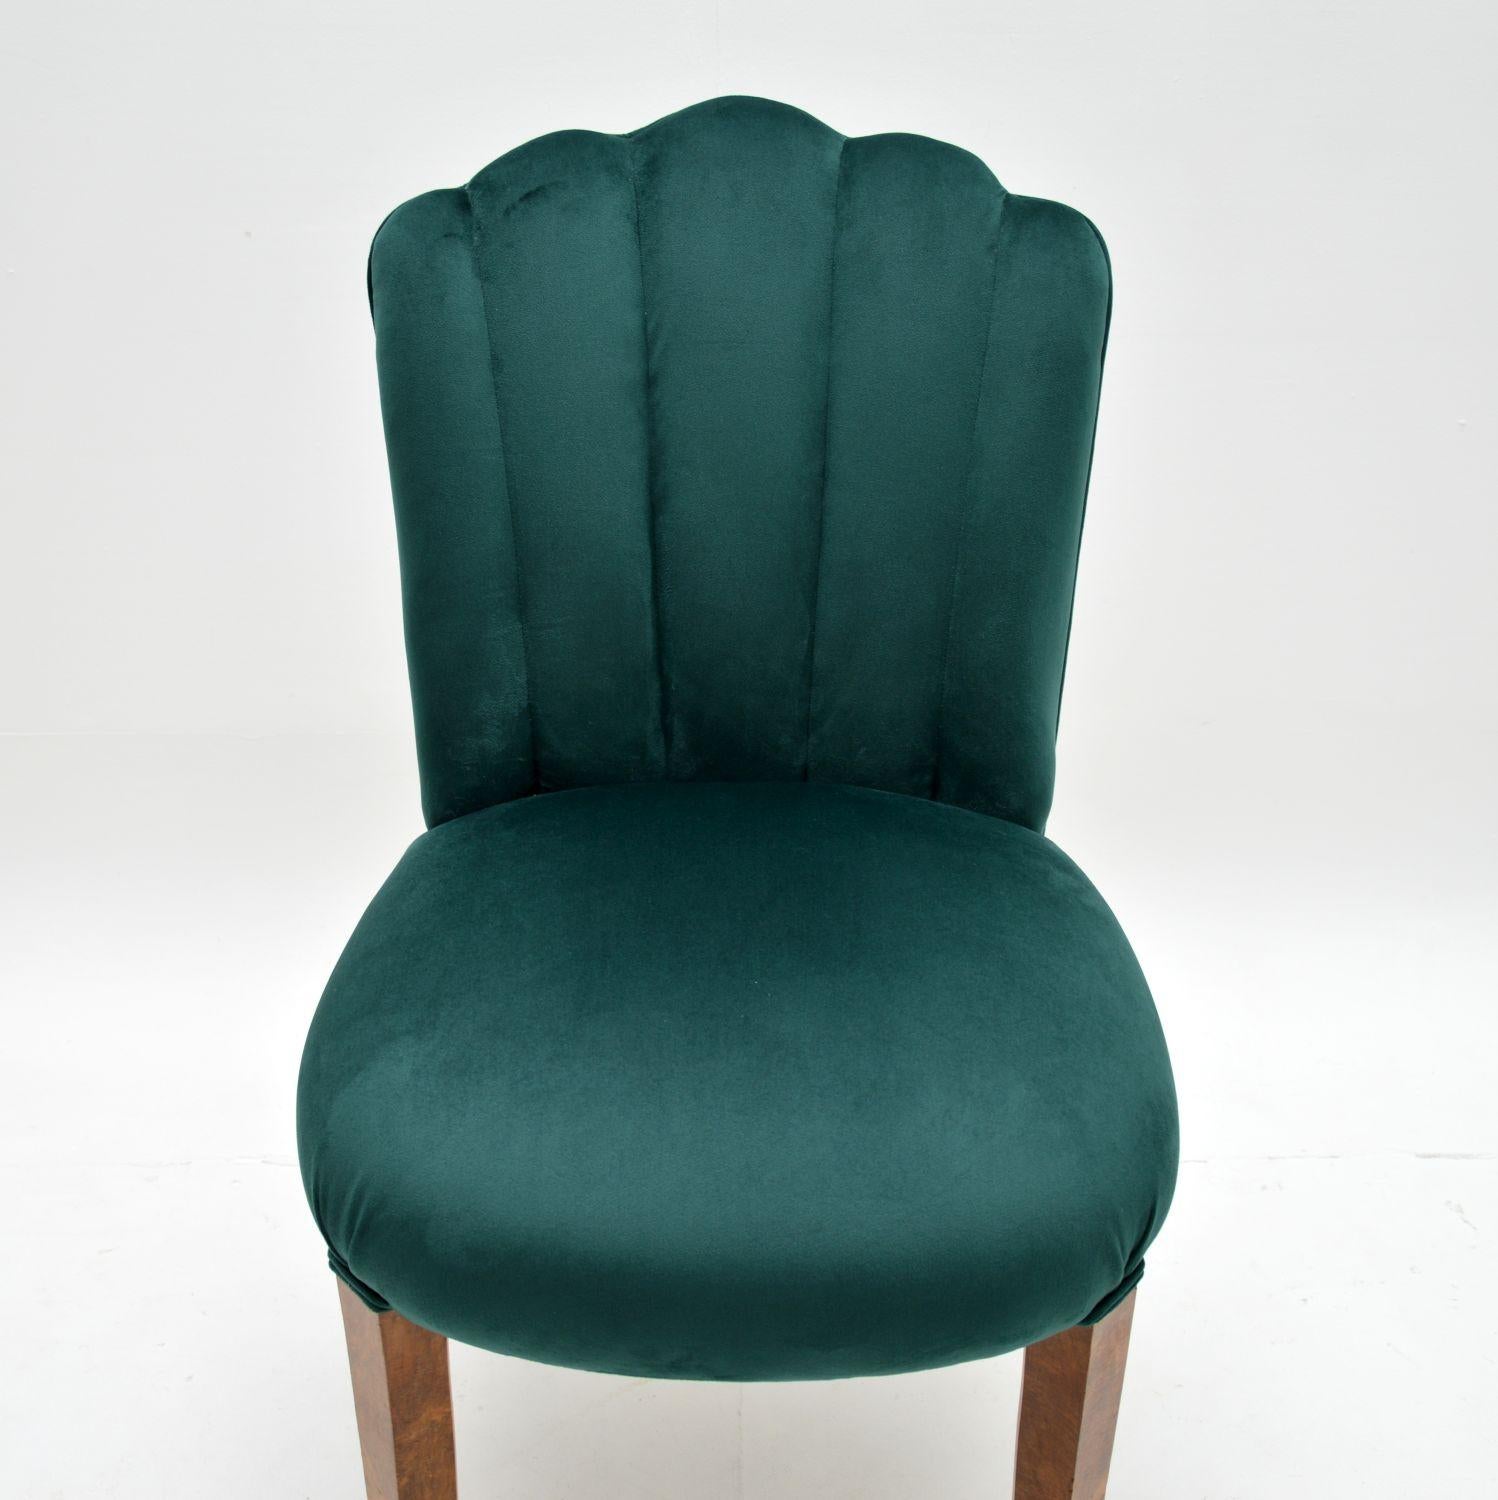 British Art Deco Period Scallop Back Chair